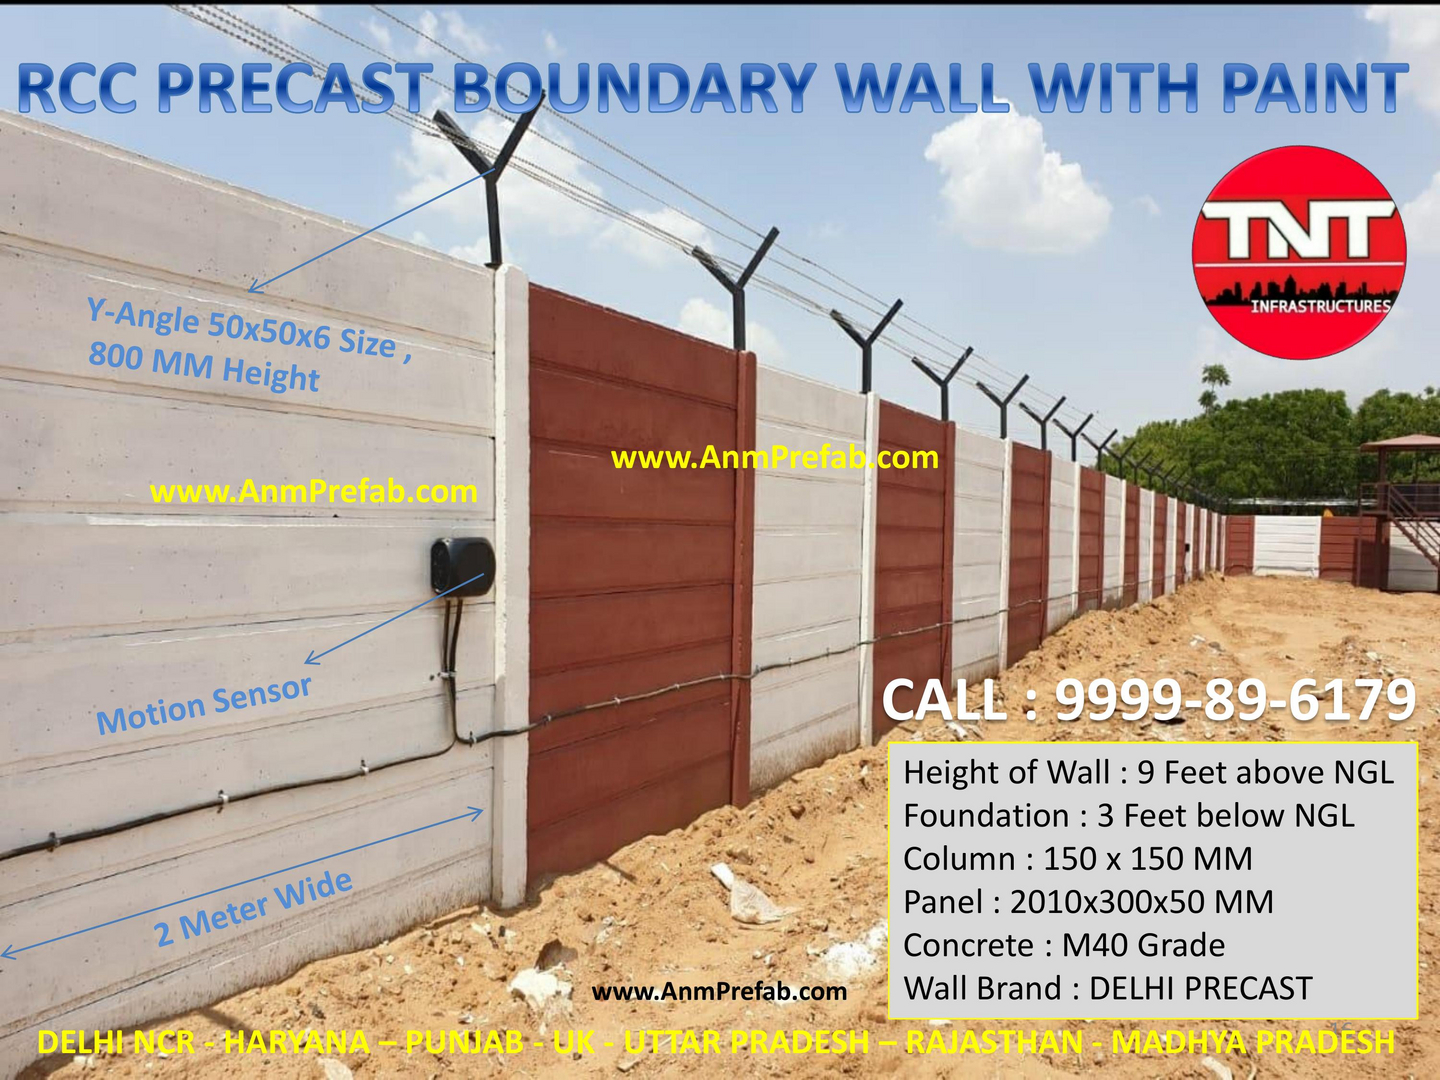 Precast Boundary Wall Manufacturer Jaipur Precast Boundary Wall ...